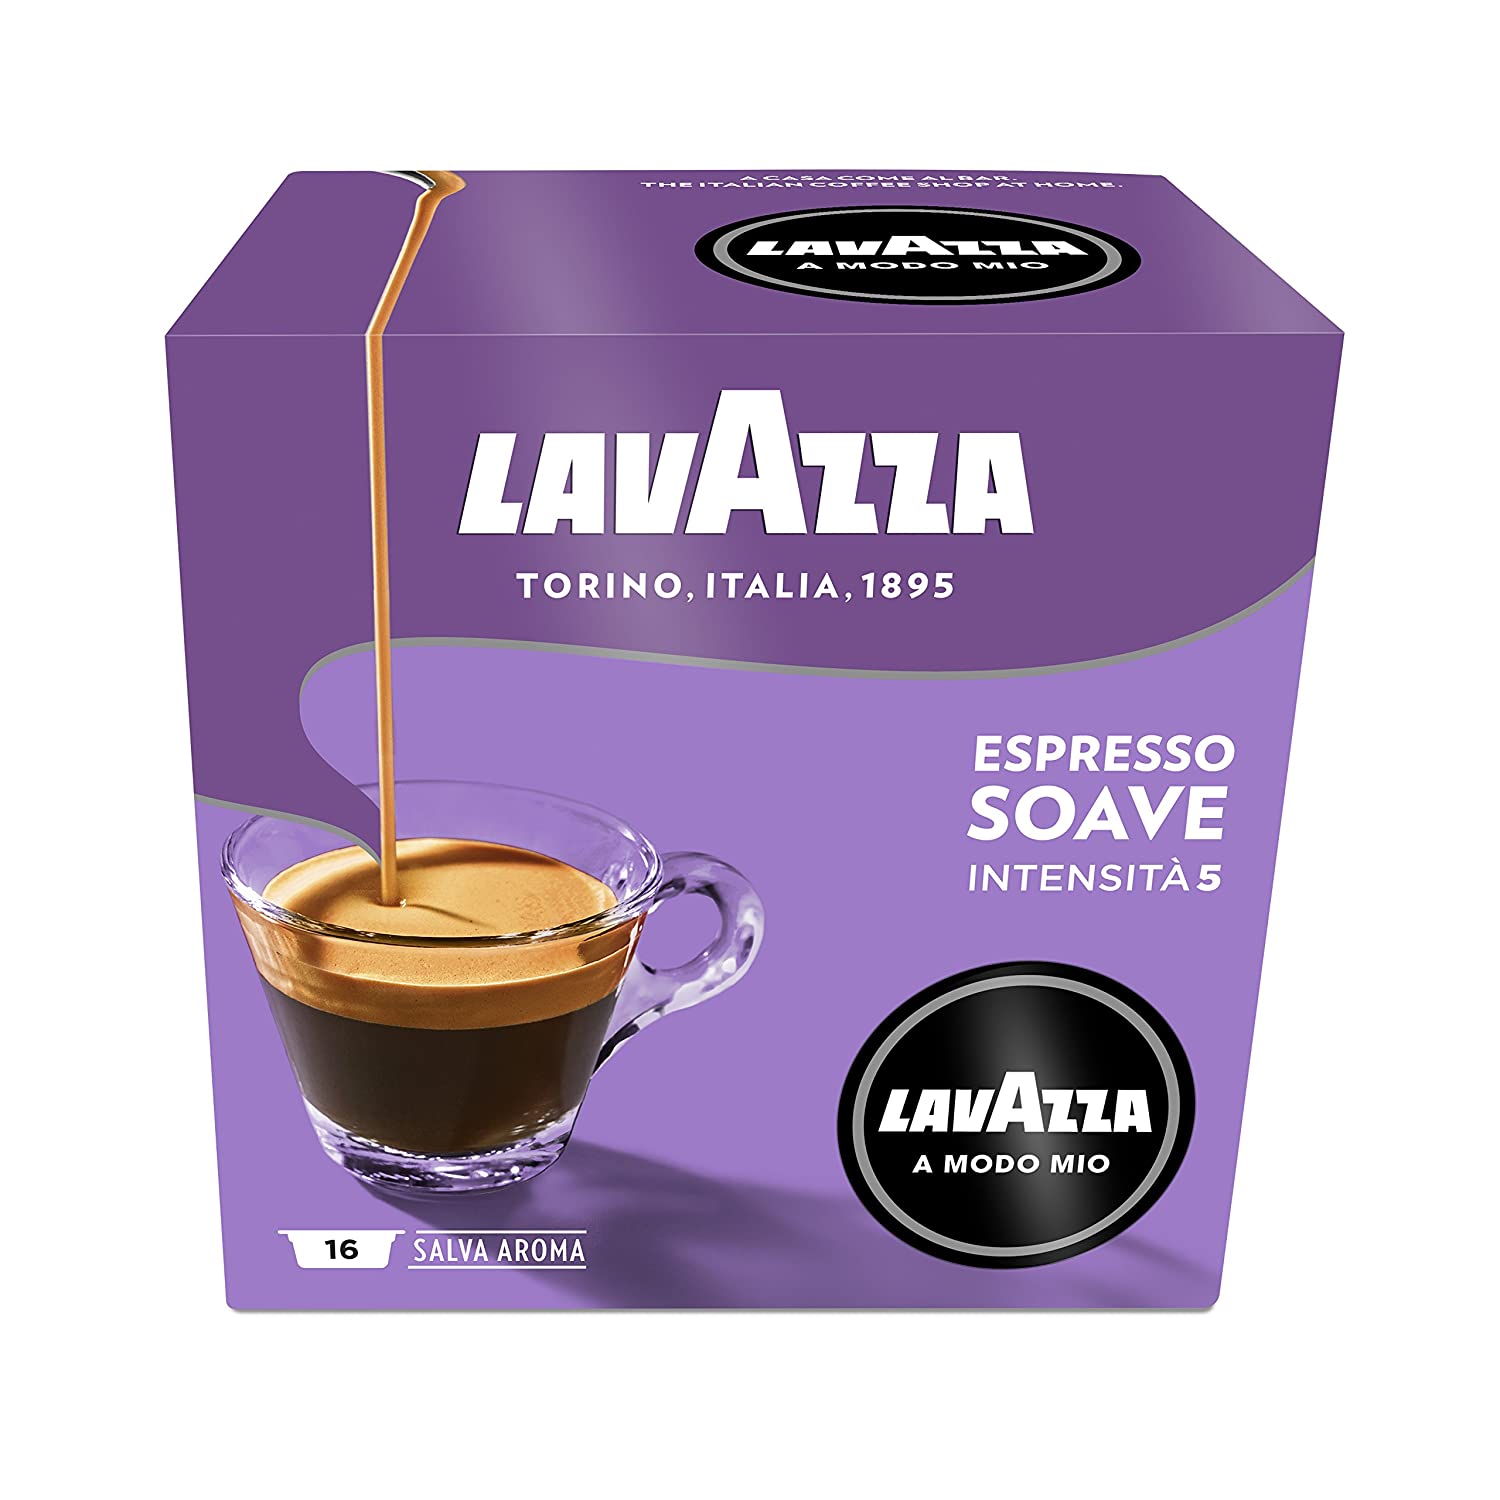 Lavazza A Modo Mio Espresso Soave, 2er Pack, 2 x 16 Kapseln (2 x 112 g)